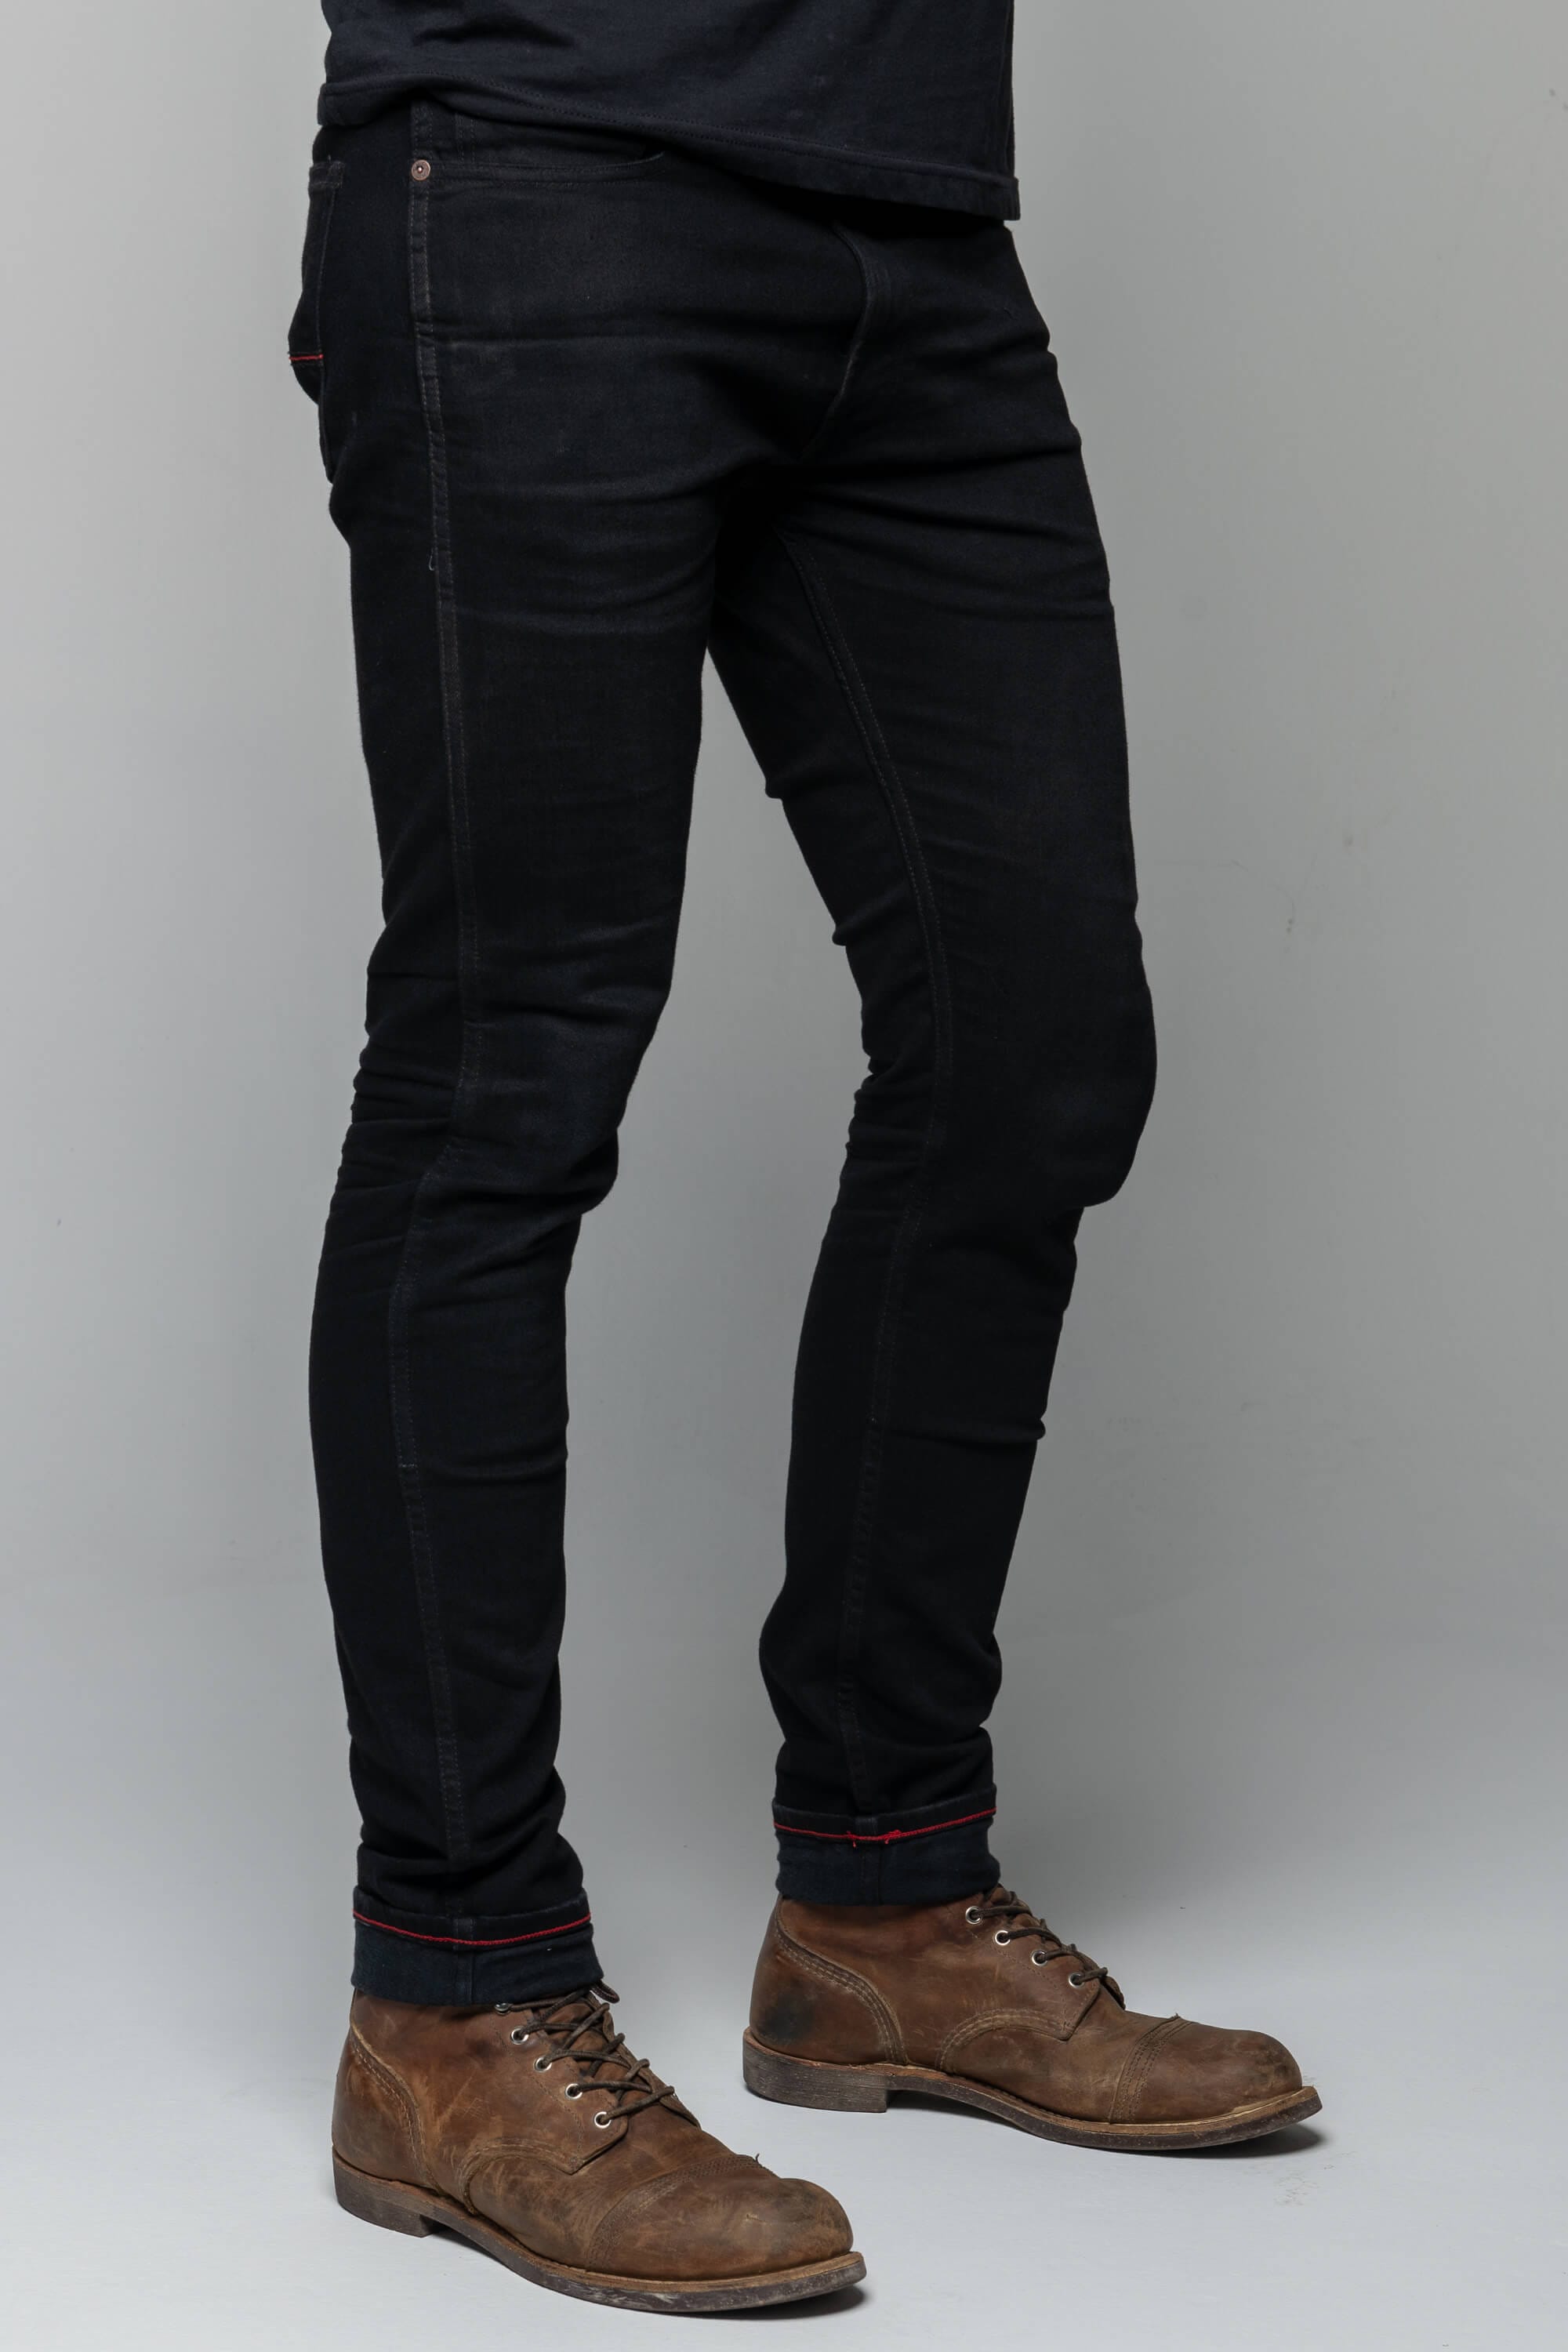 Roadskin Water Resistant Kevlar lined hoody and denim jeans